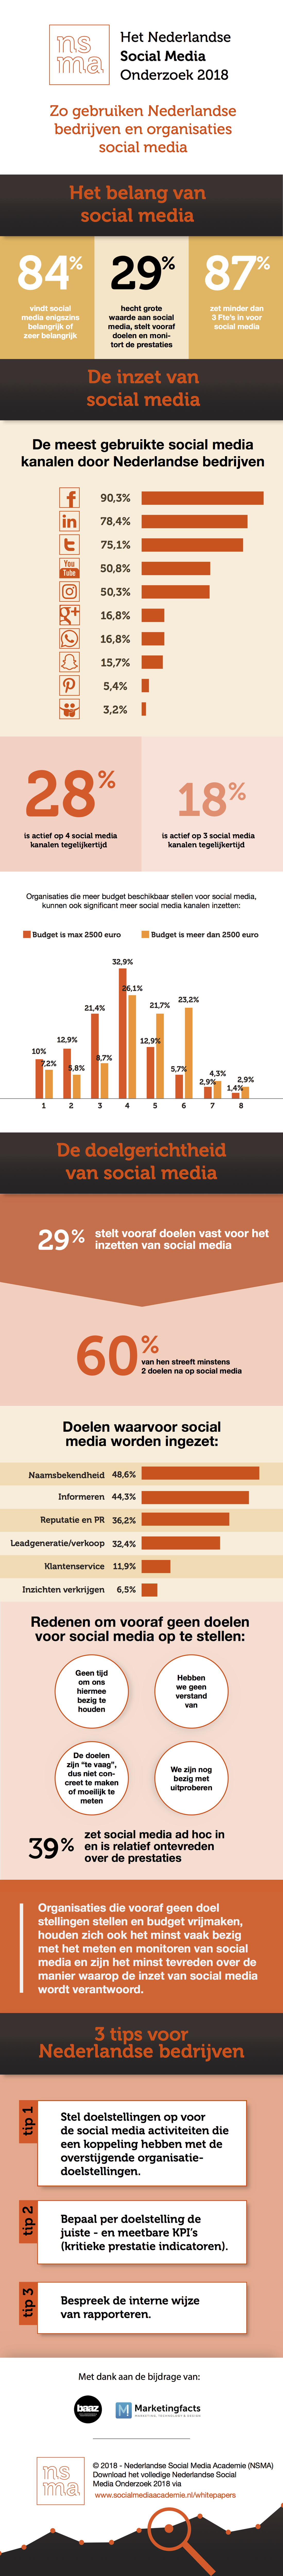 Infographic Nederlandse Social Media Onderzoek 2018 - Nederlandse Social Media Academie